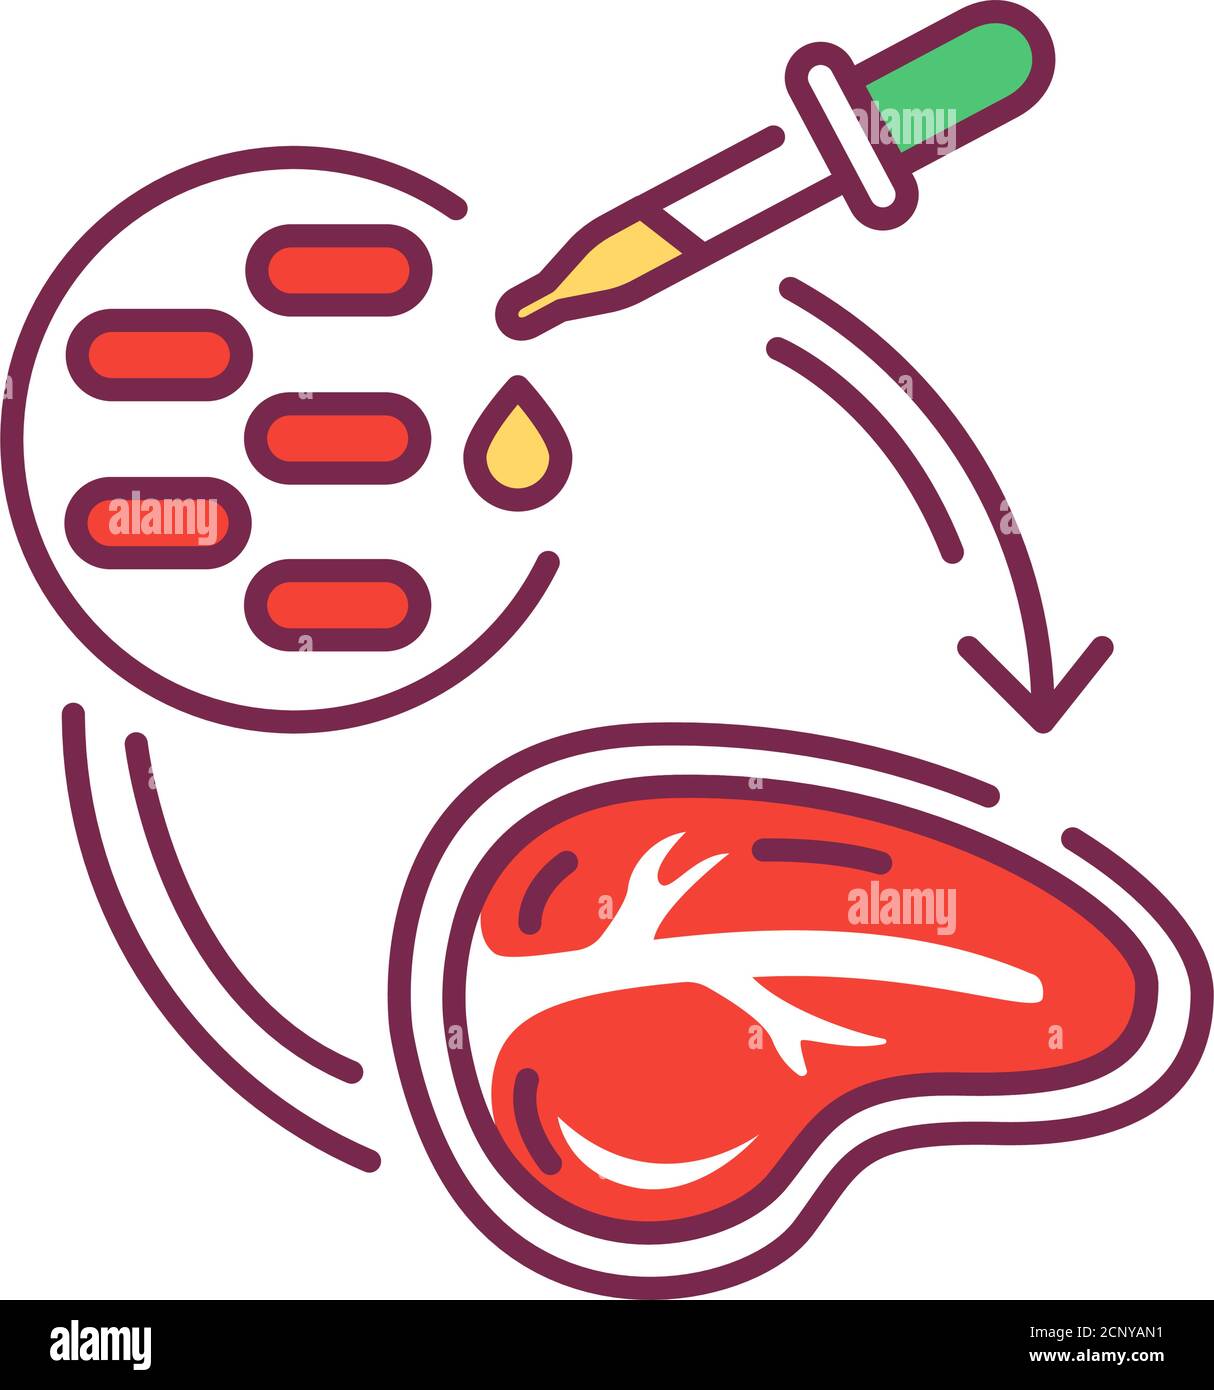 Symbol für Stammzellenfleisch-Farblinie. Fleisch, das durch in vitro Zellkultur tierischer Zellen anstelle von geschlachteten Tieren hergestellt wird. Piktogramm für Webseite Stock Vektor